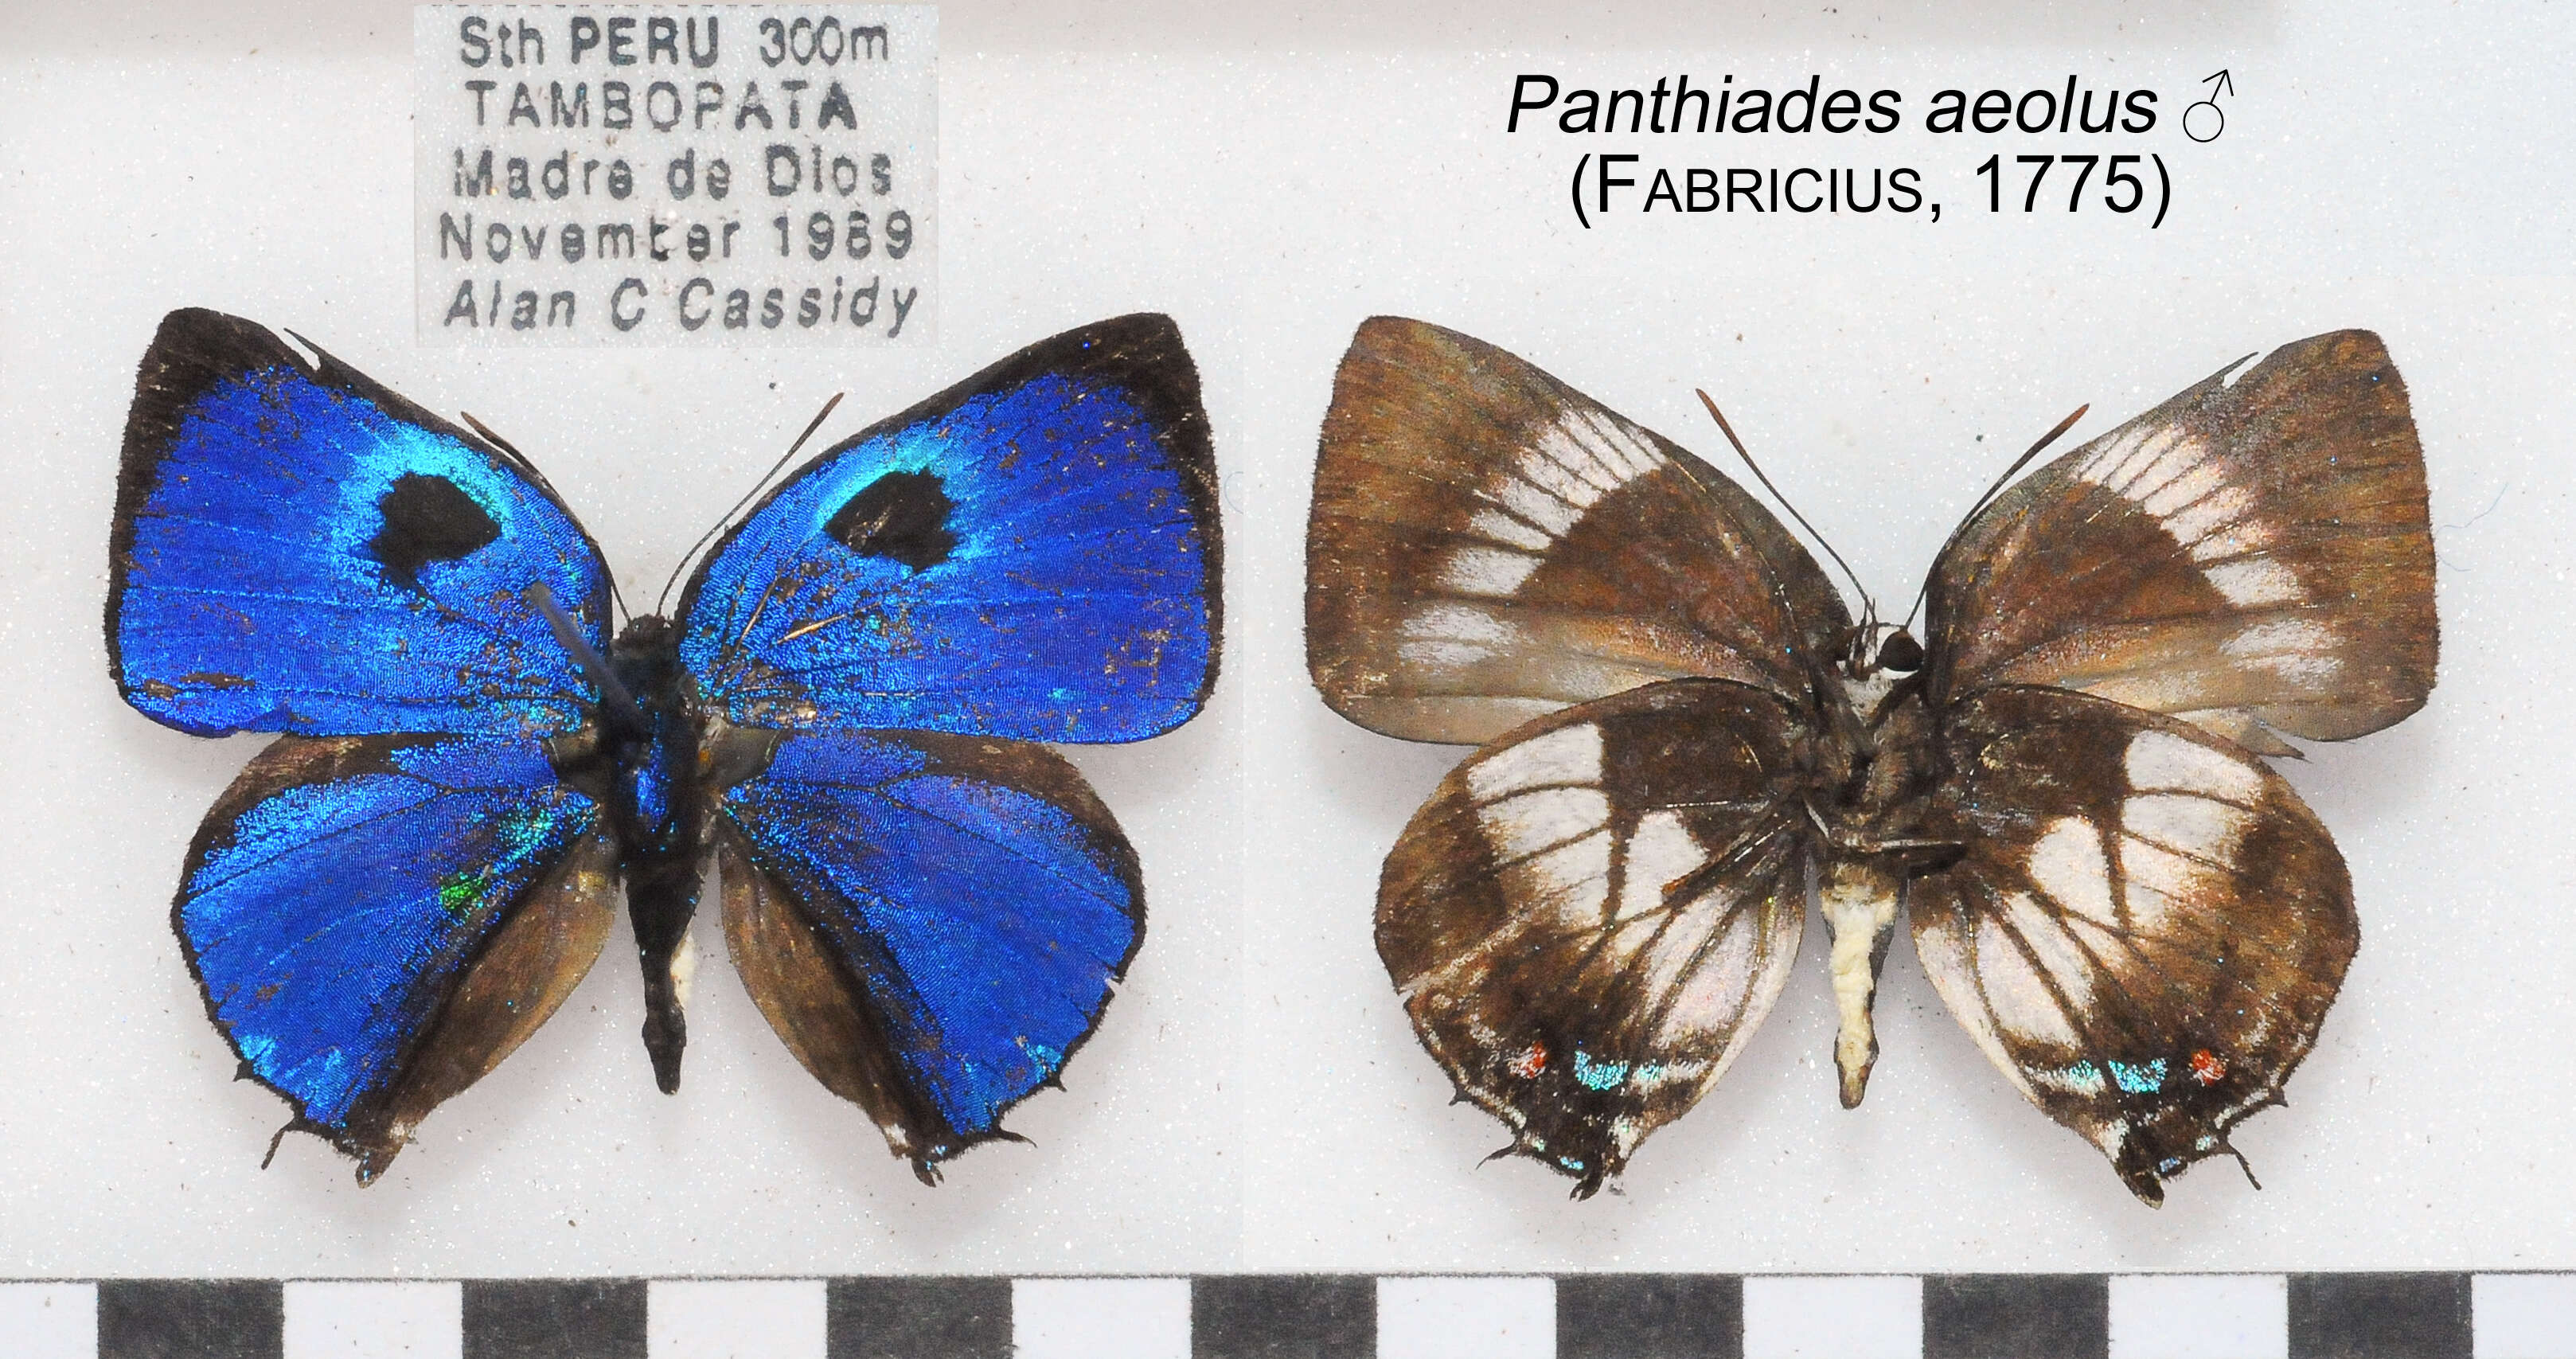 Image of Panthiades aeolus (Fabricius 1775)